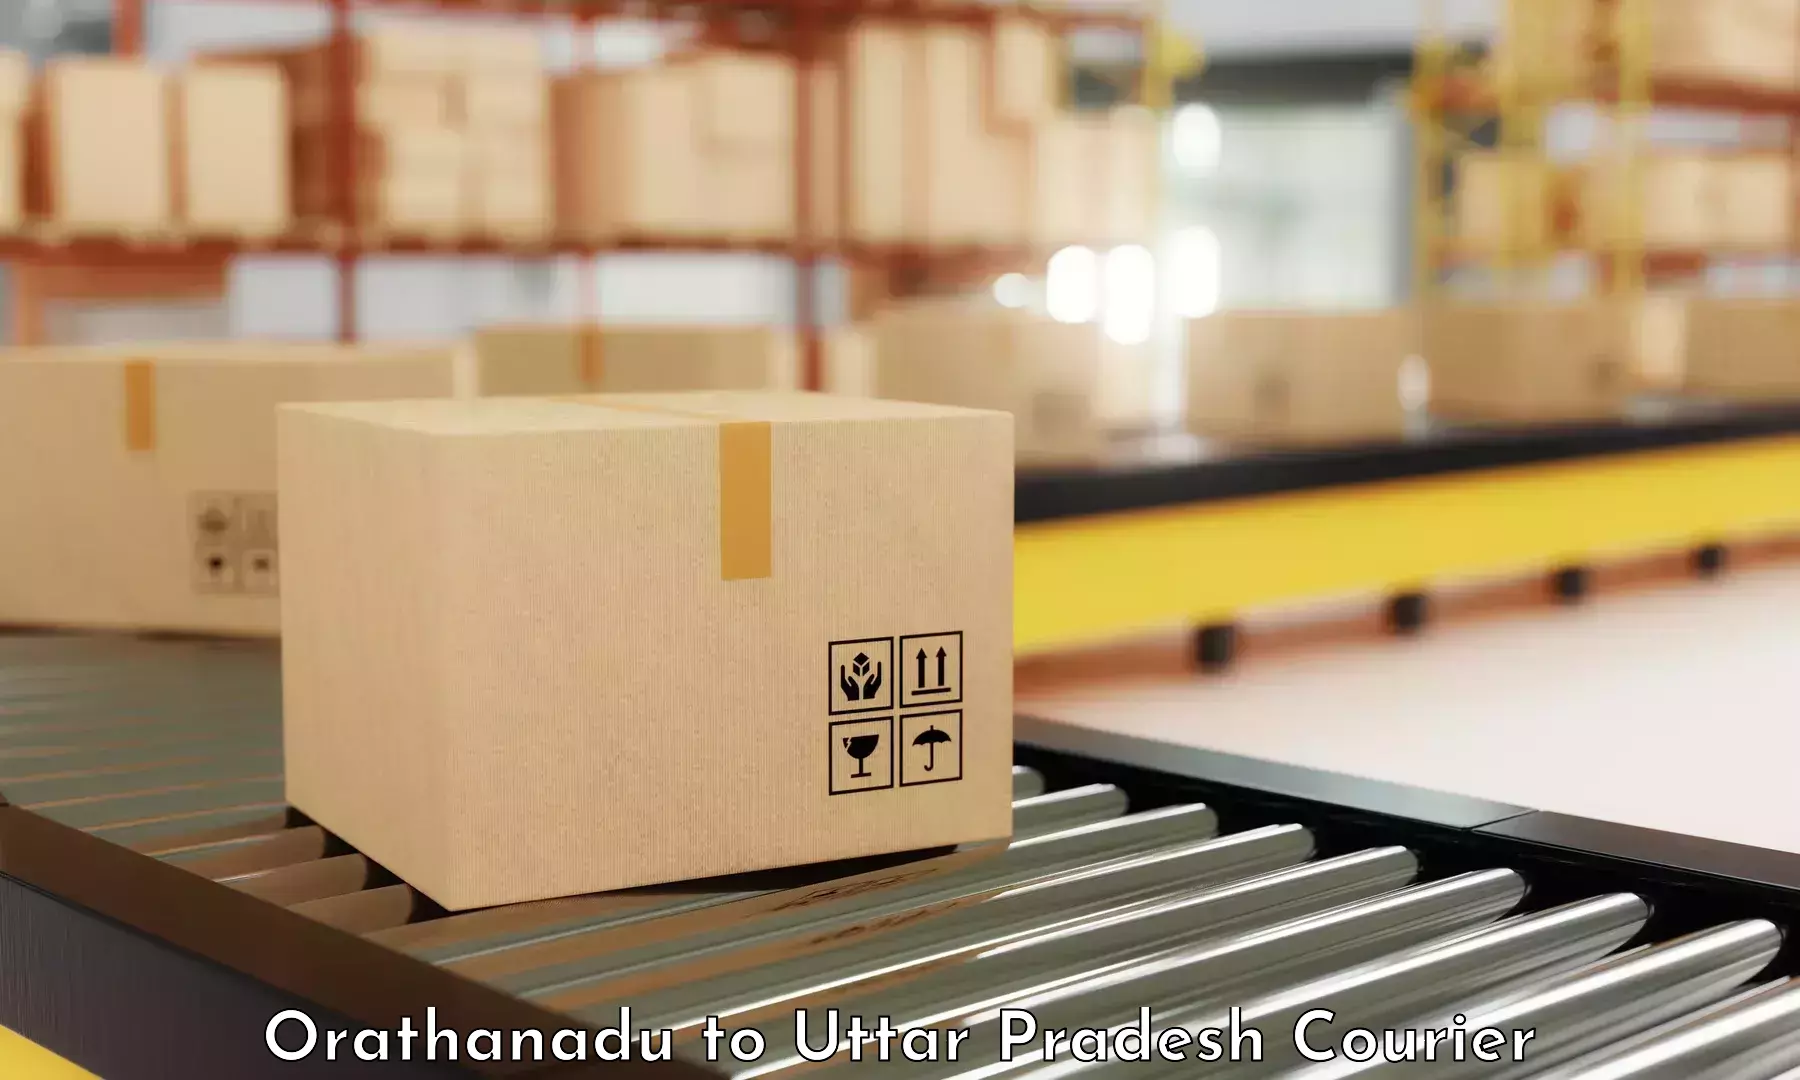 Reliable parcel services Orathanadu to Mungra Badshahpur